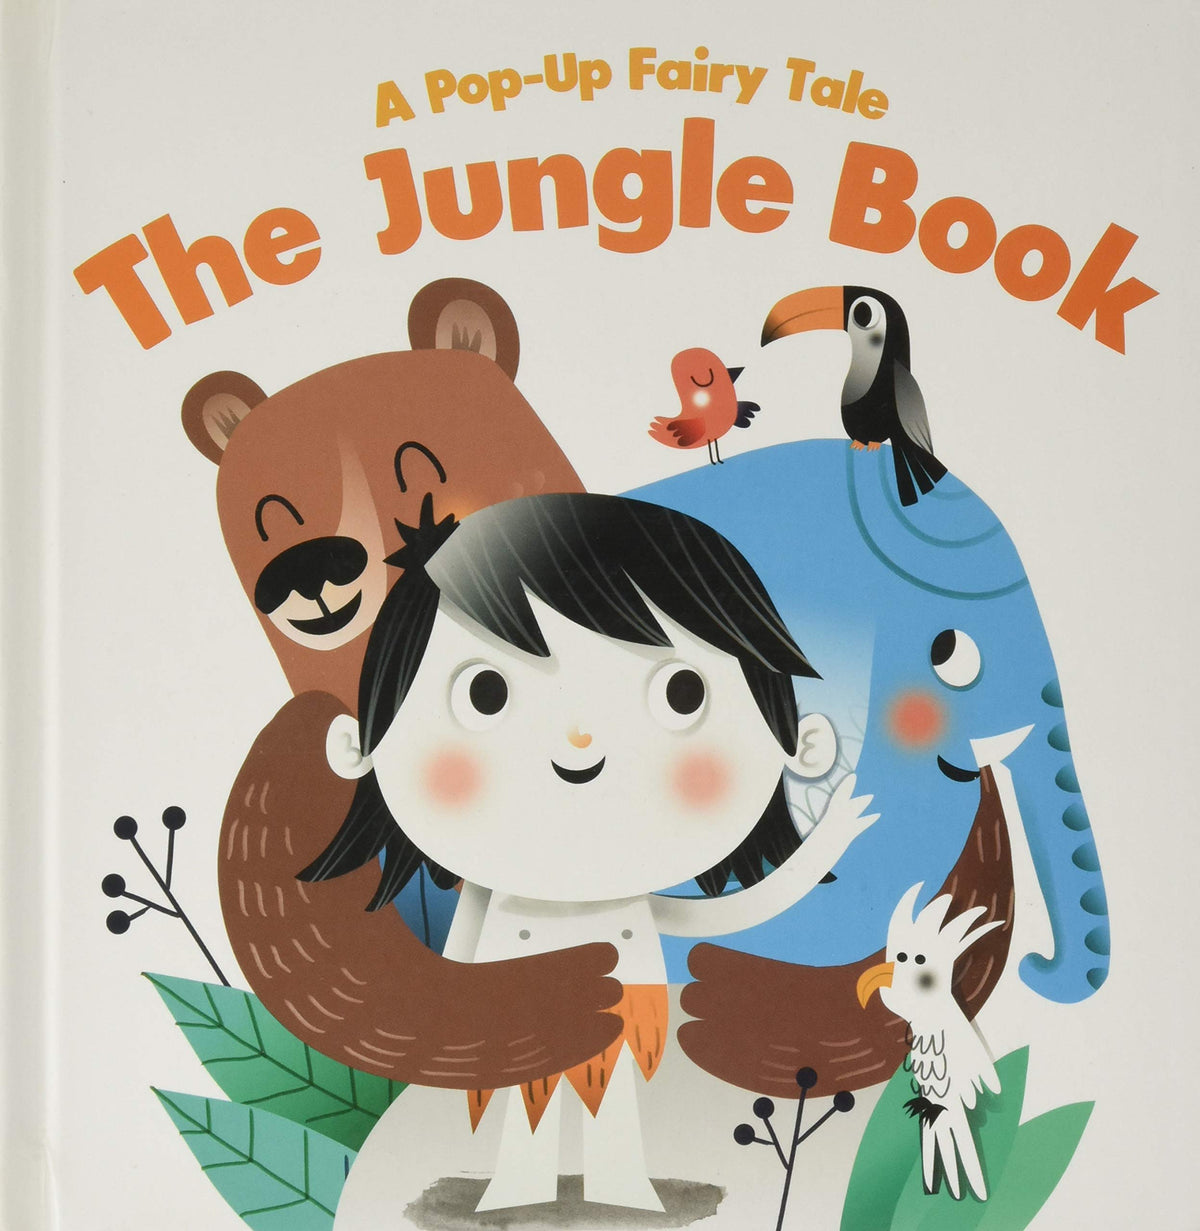 Fairytale Pop Up: Jungle Book I Mowgli Bagheera Jungle Tale Boardbook for Kids